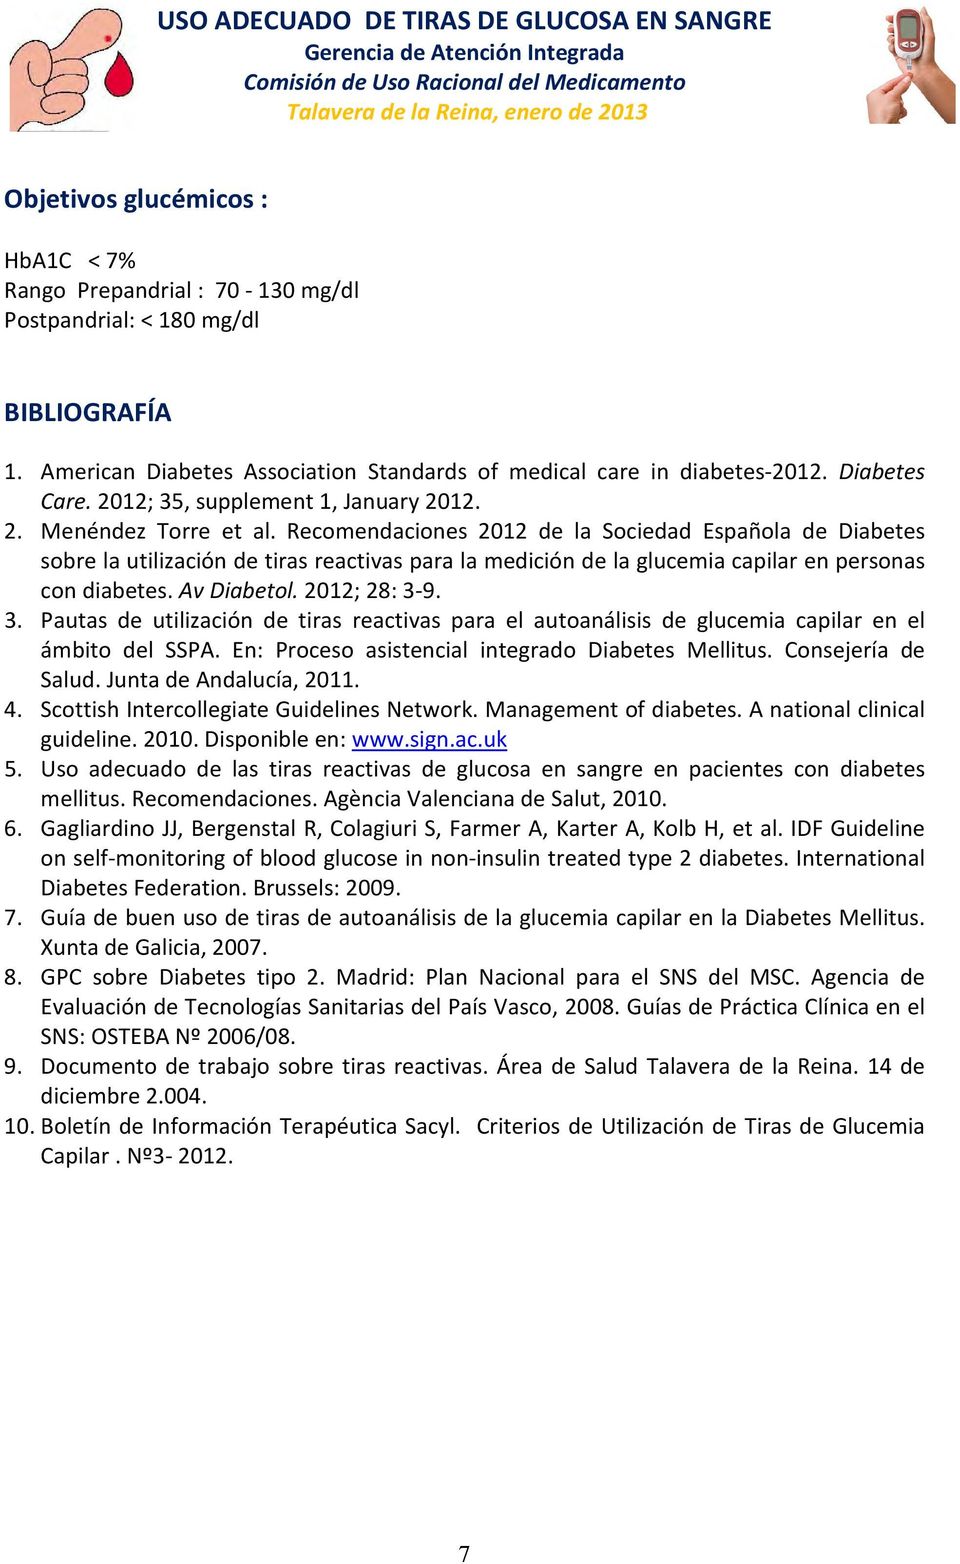 Recomendaciones 2012 de la Sociedad Española de Diabetes sobre la utilización de tiras reactivas para la medición de la glucemia capilar en personas con diabetes. Av Diabetol. 2012; 28: 3-